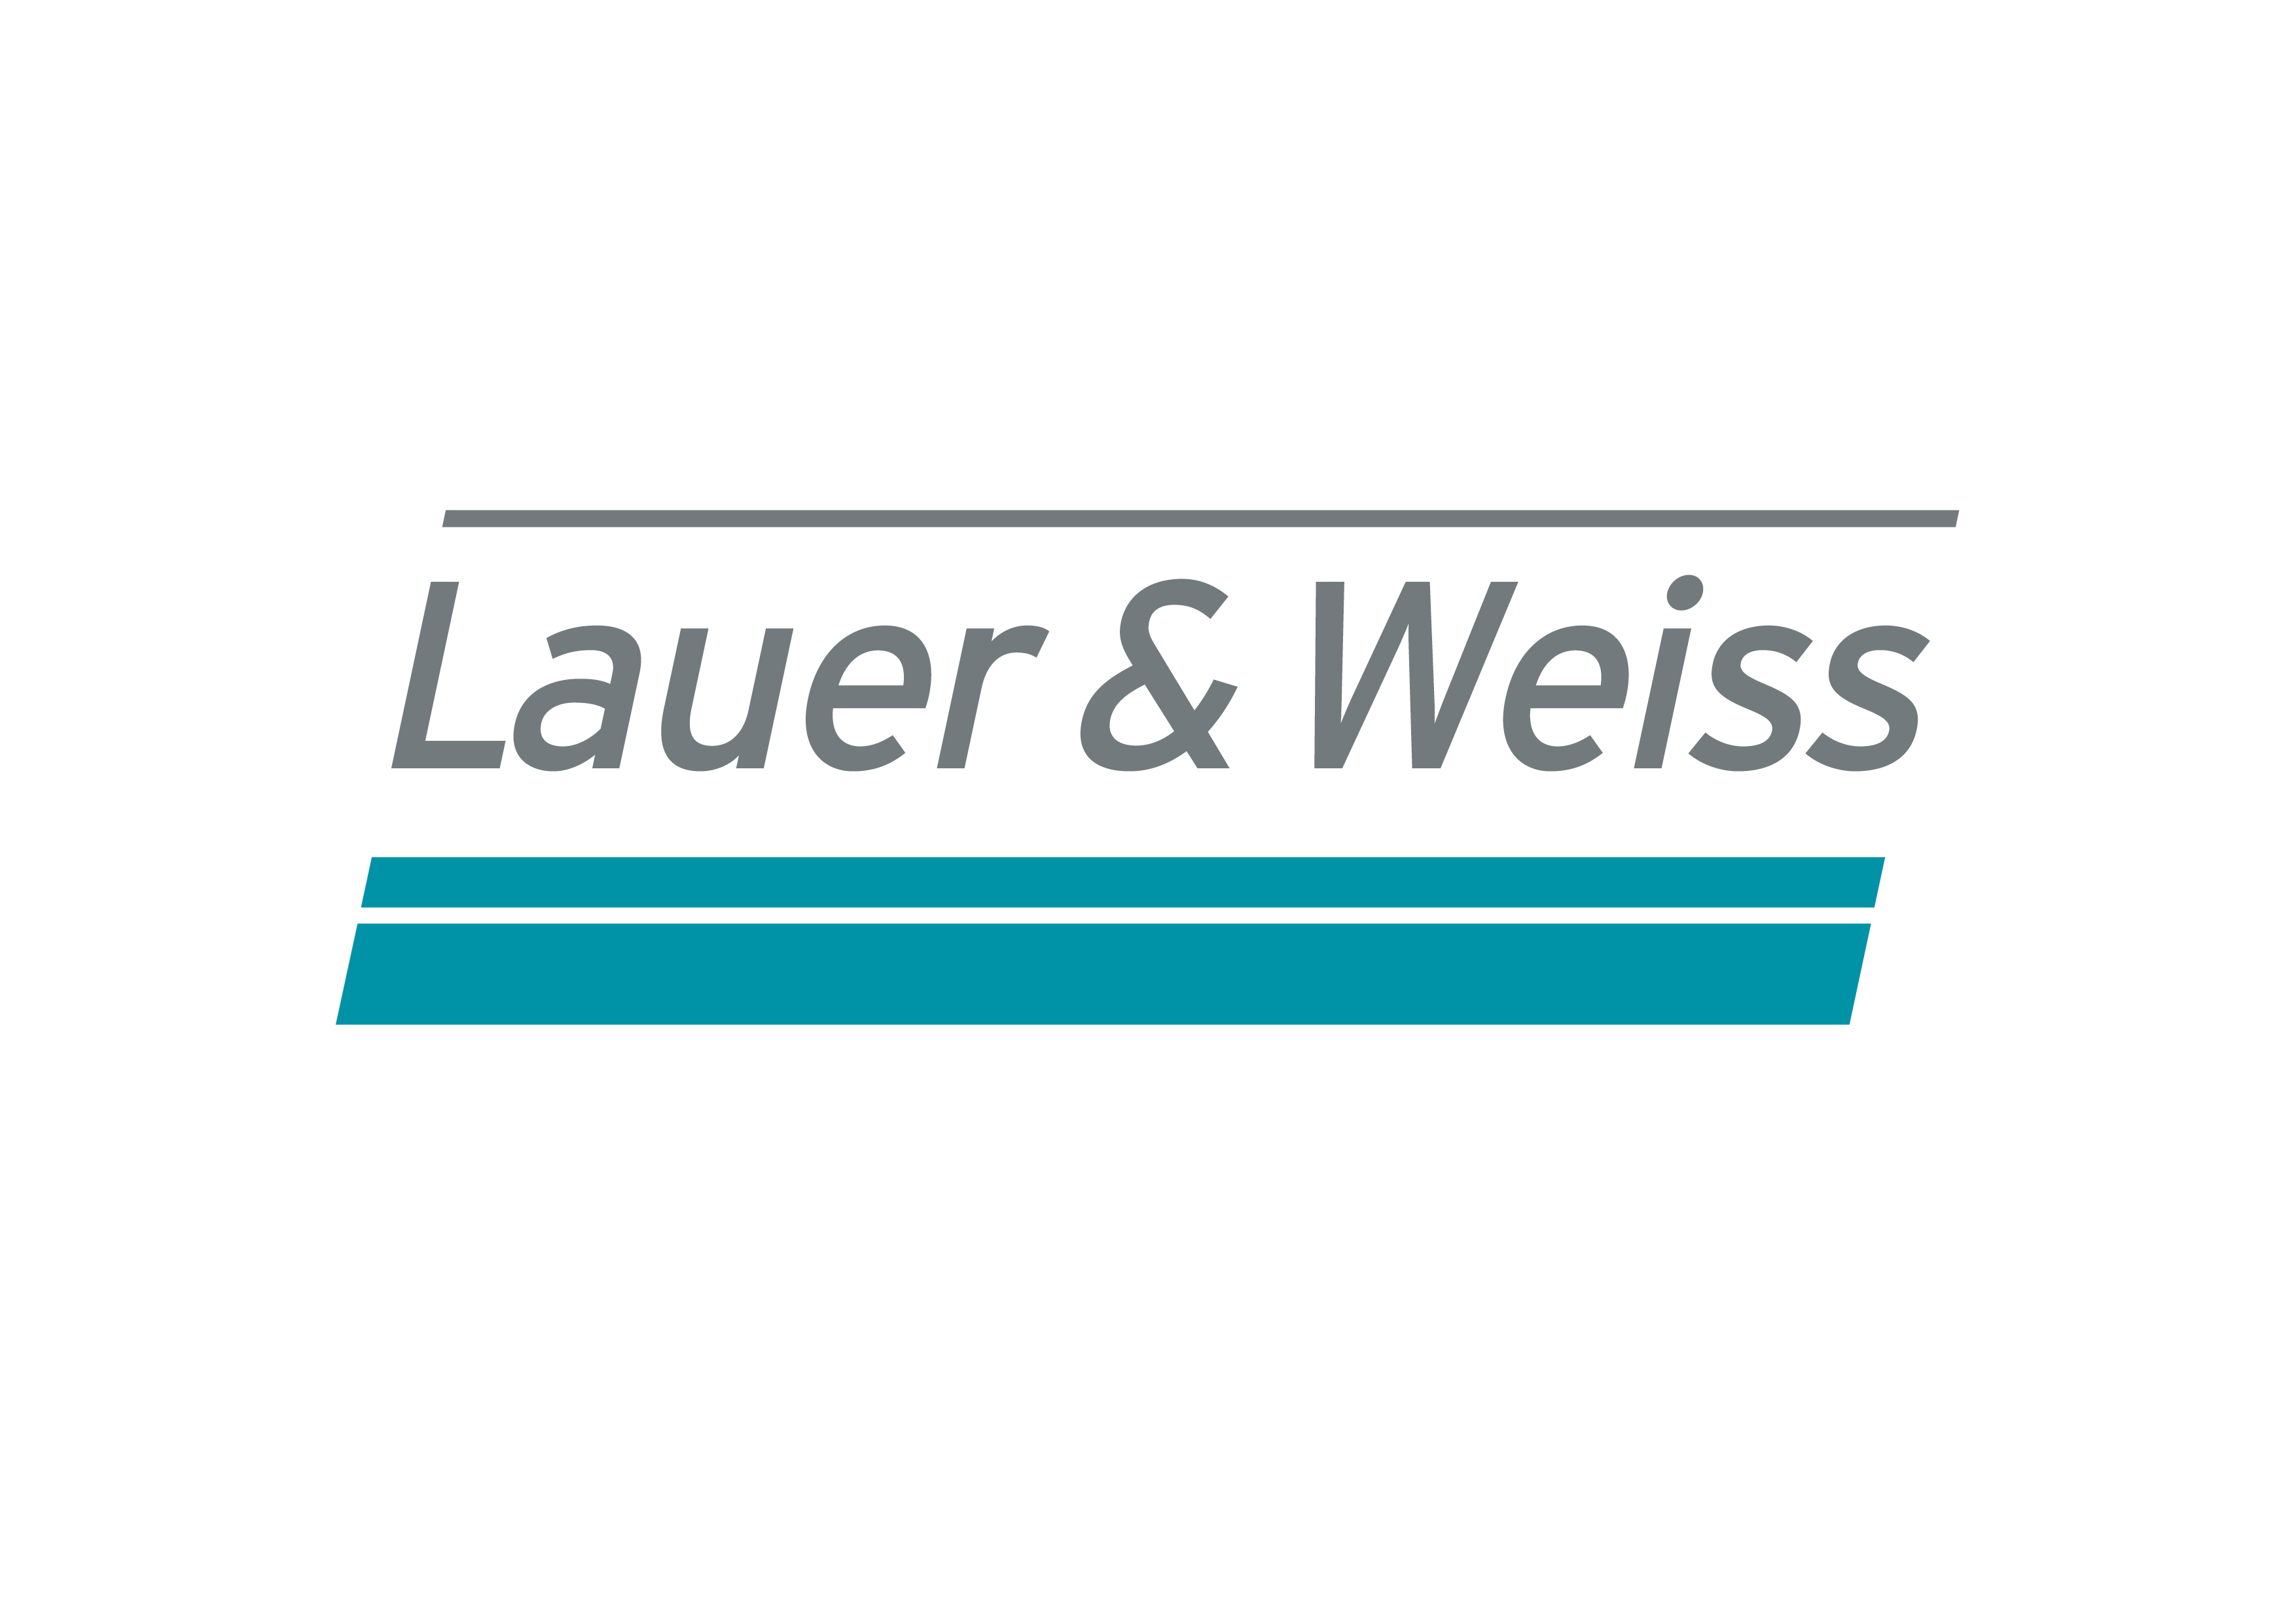 Stand 94 Lauer & Weiss GmbH Kompetenzzentrum für Modulentwicklung Wir von Lauer & Weiss verbinden in unserer Arbeit täglich das Denkbare mit dem Machbaren.